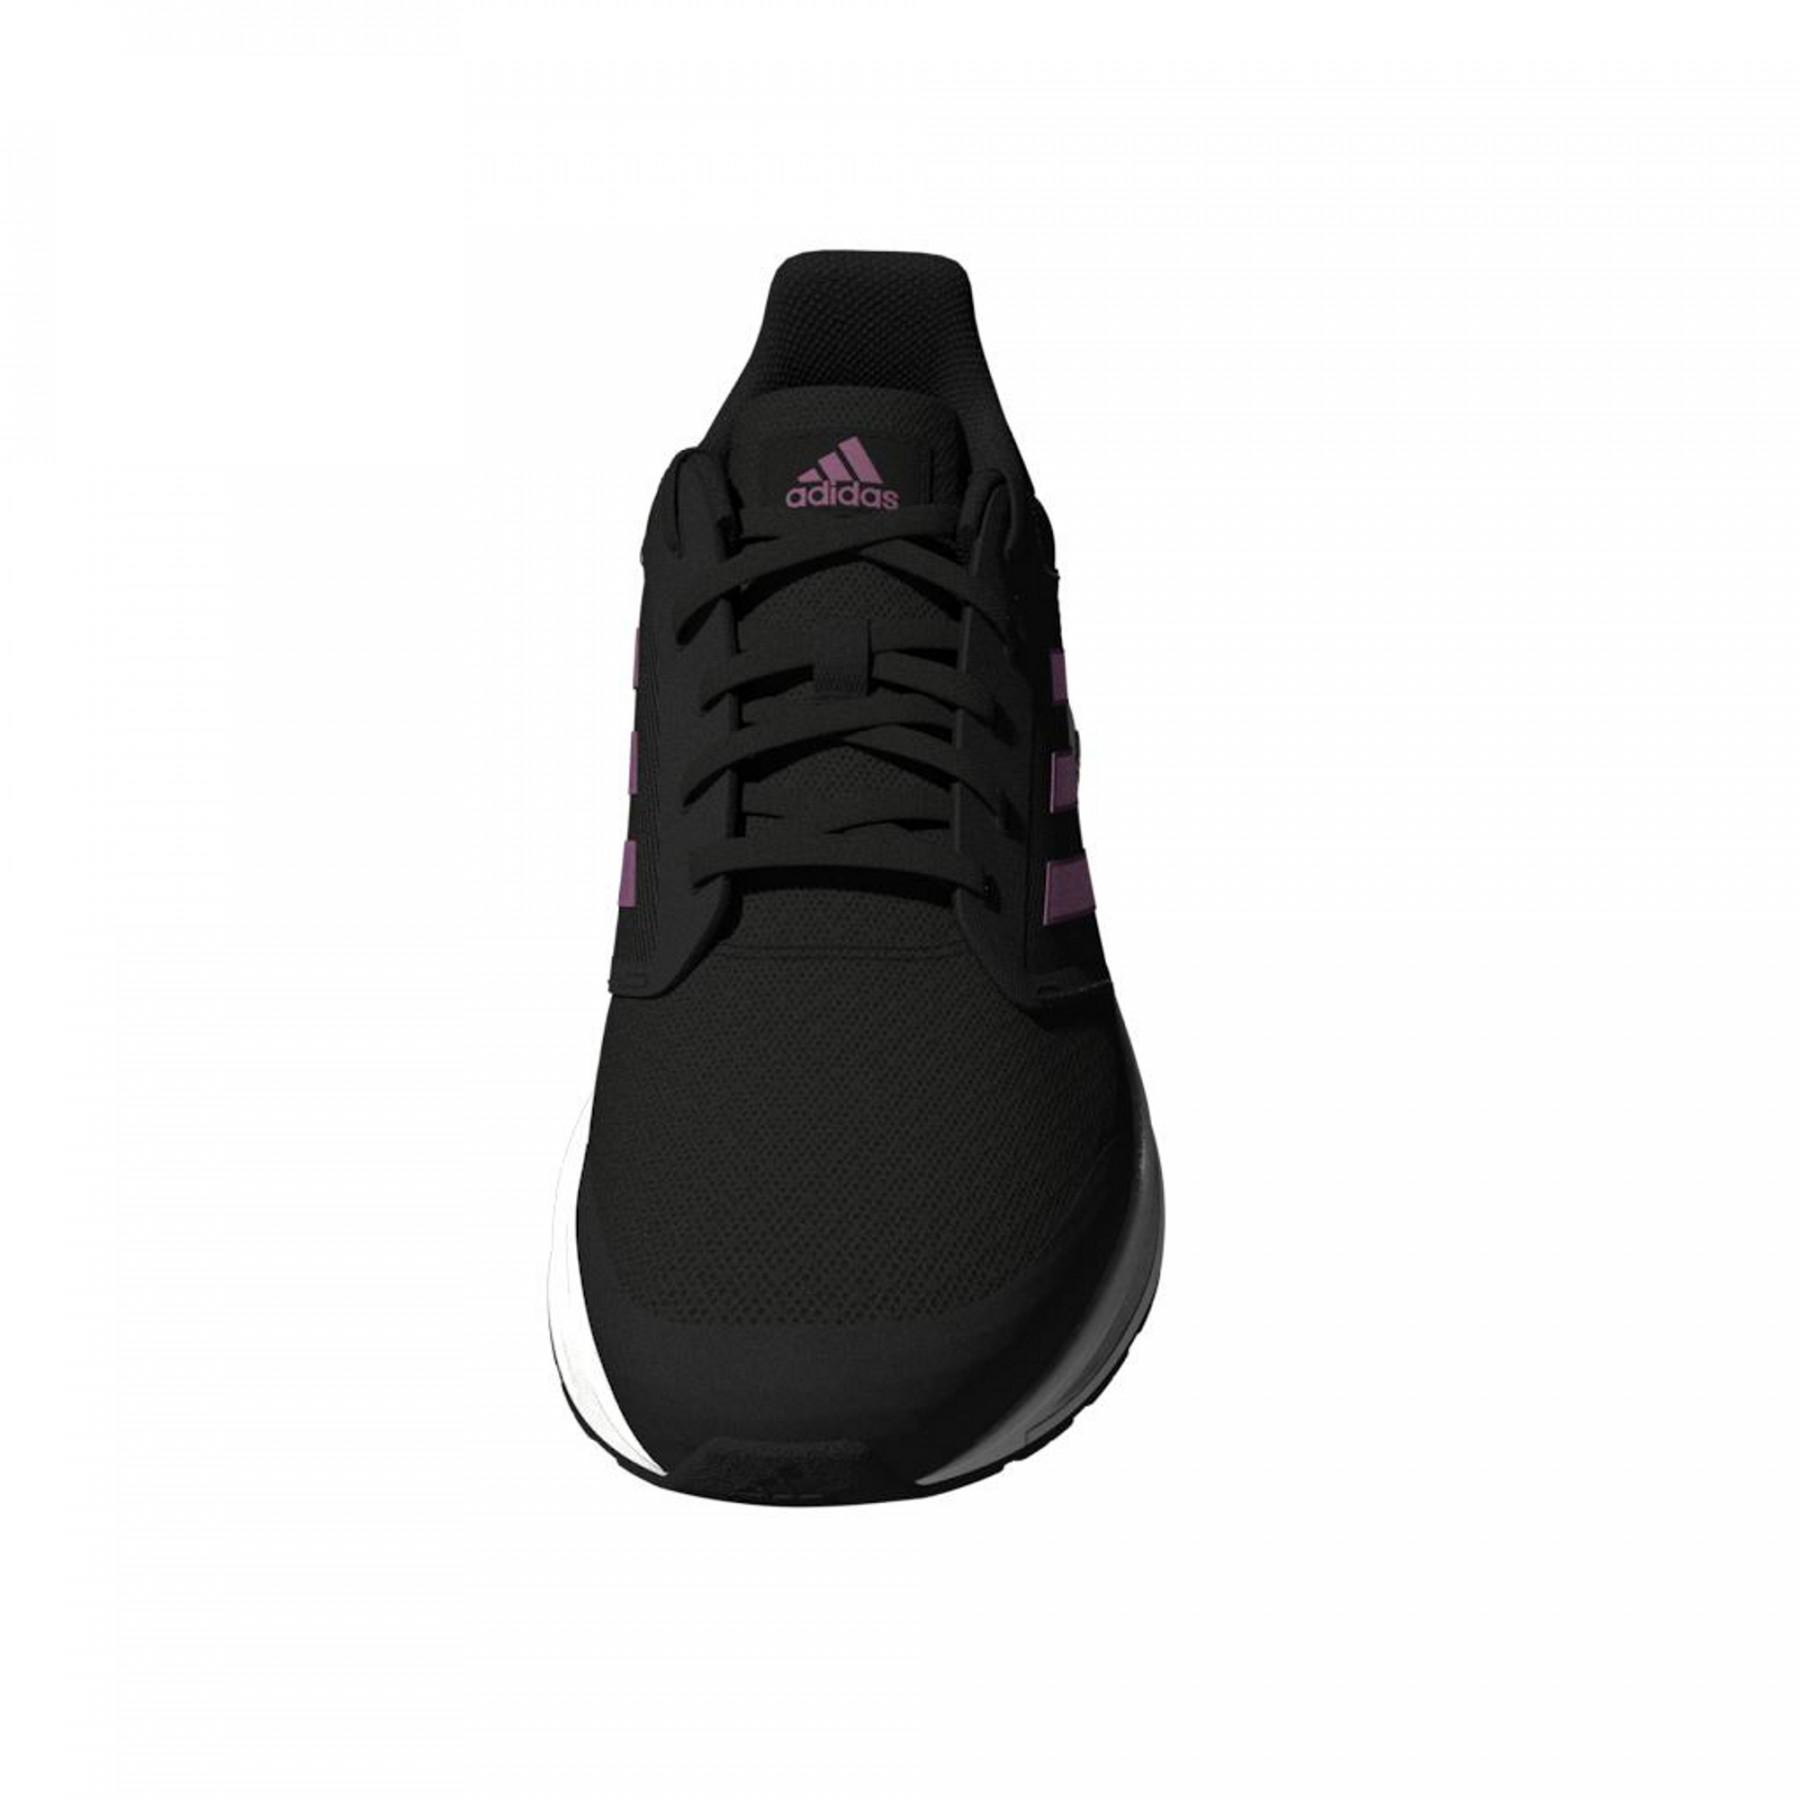 Zapatillas para mujer negras Adidas Galaxy 5. Envío 24h-72h.